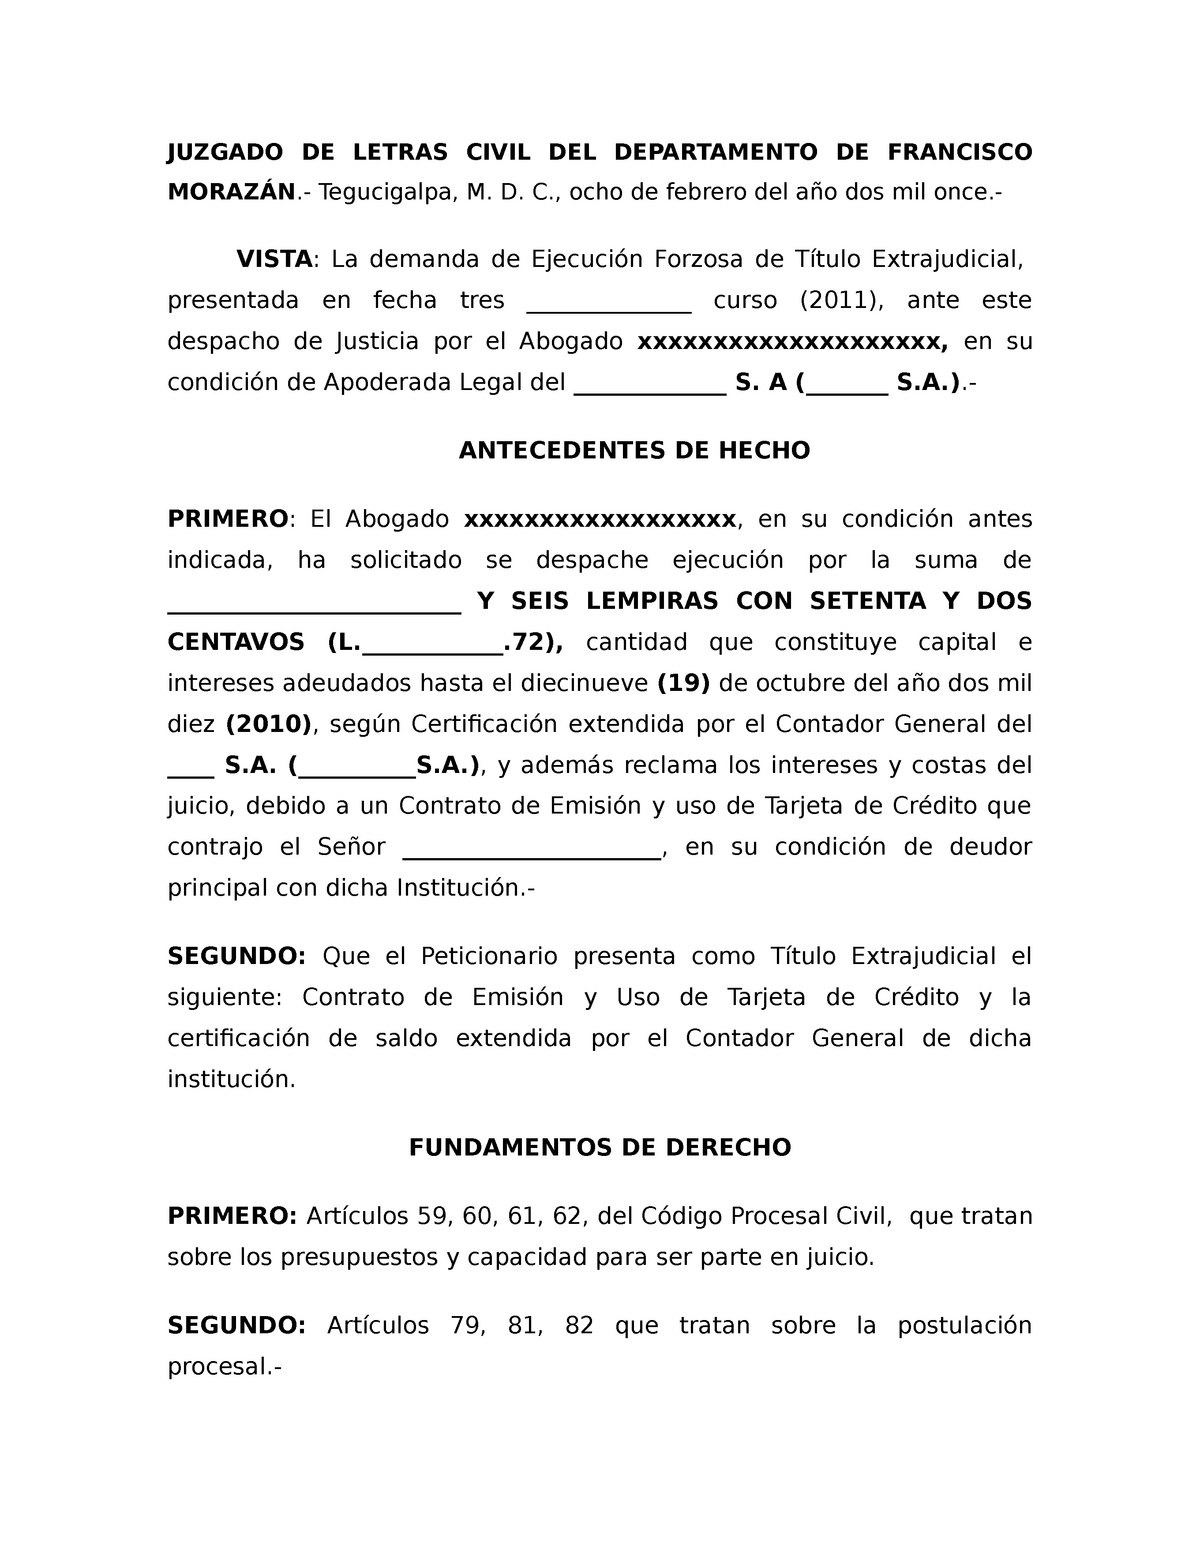 Auto de admision demanda de ejecucion forsoza de titulo extrajudicial -  JUZGADO DE LETRAS CIVIL DEL - Studocu